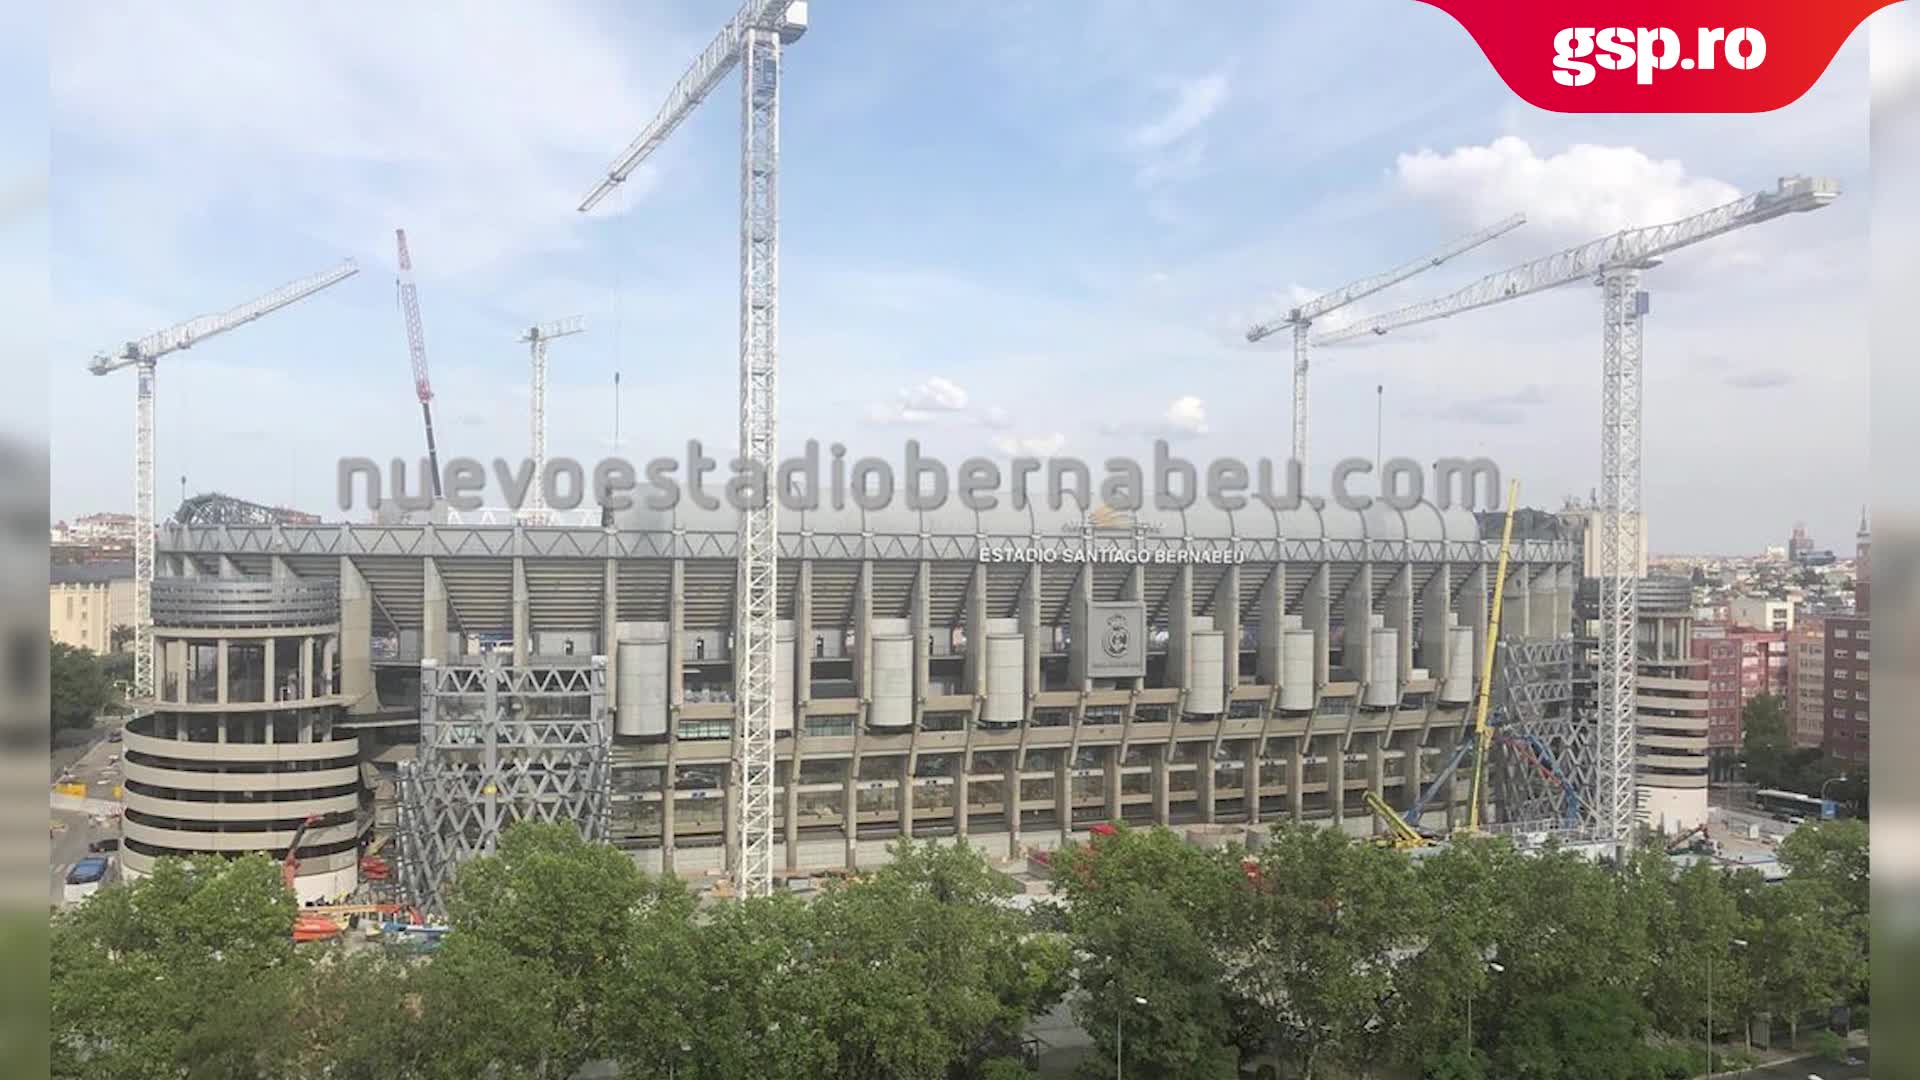  Stadionul Santiago Bernabeu, casa lui Real Madrid, este în curs de modernizare